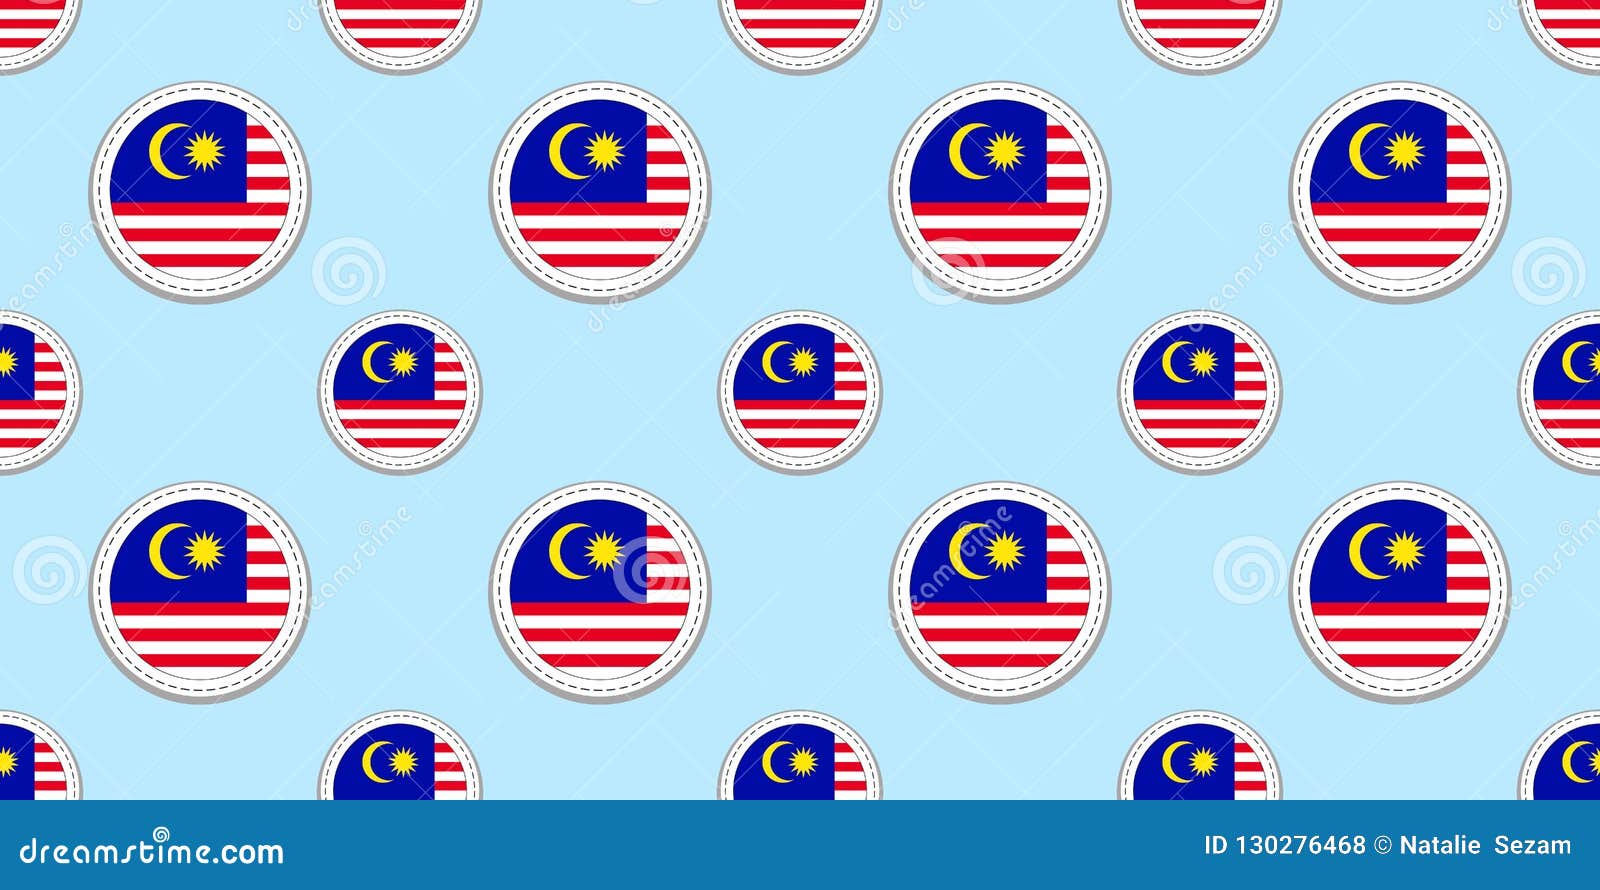 Malezja round flagi bezszwowy wzór Malezyjski tło Wektorowe okrąg ikony Geometryczni symbole Tekstura dla sport stron, comp. Malezja round flagi bezszwowy wzór Malezyjski tło Wektorowe okrąg ikony Geometryczni symbole Tekstura dla sport stron, rywalizacja, gry, podróżuje projektów elementy patriotyczna tapeta